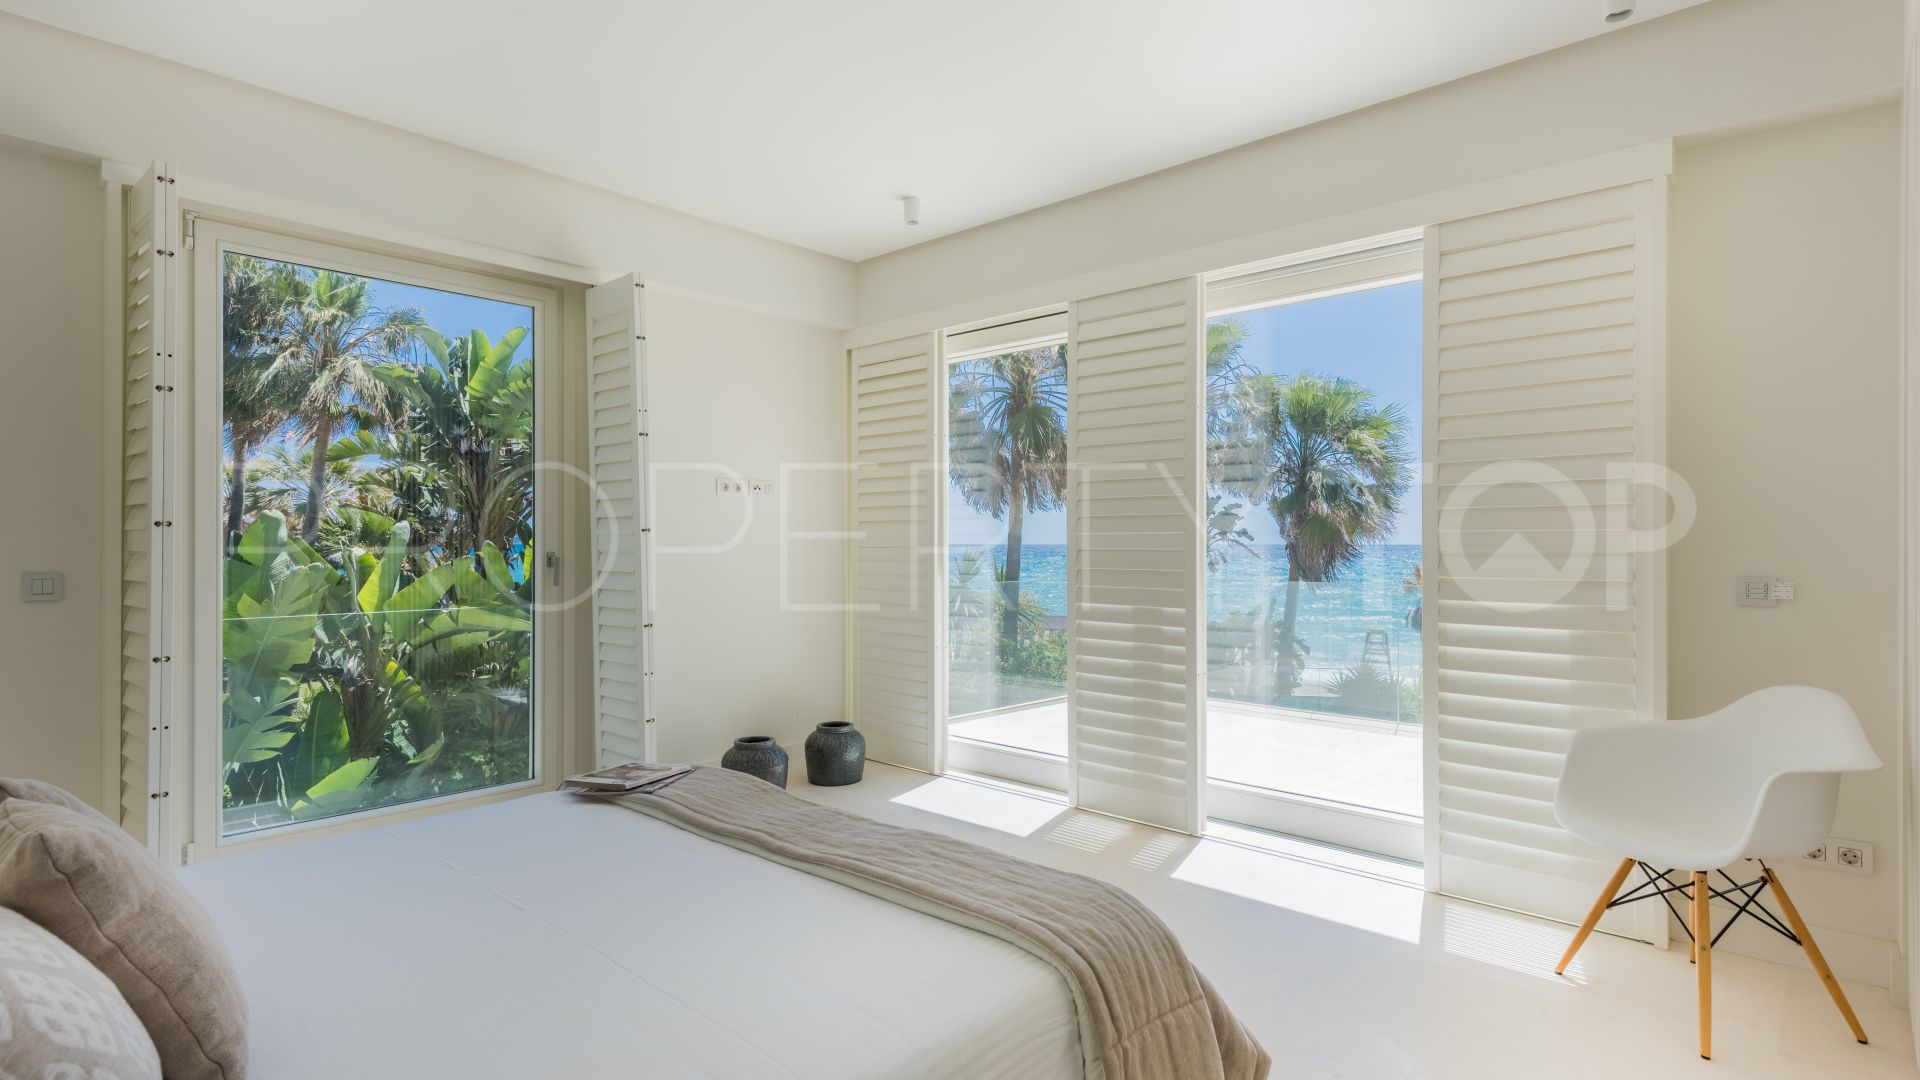 6 bedrooms villa in Rio Verde Playa for sale